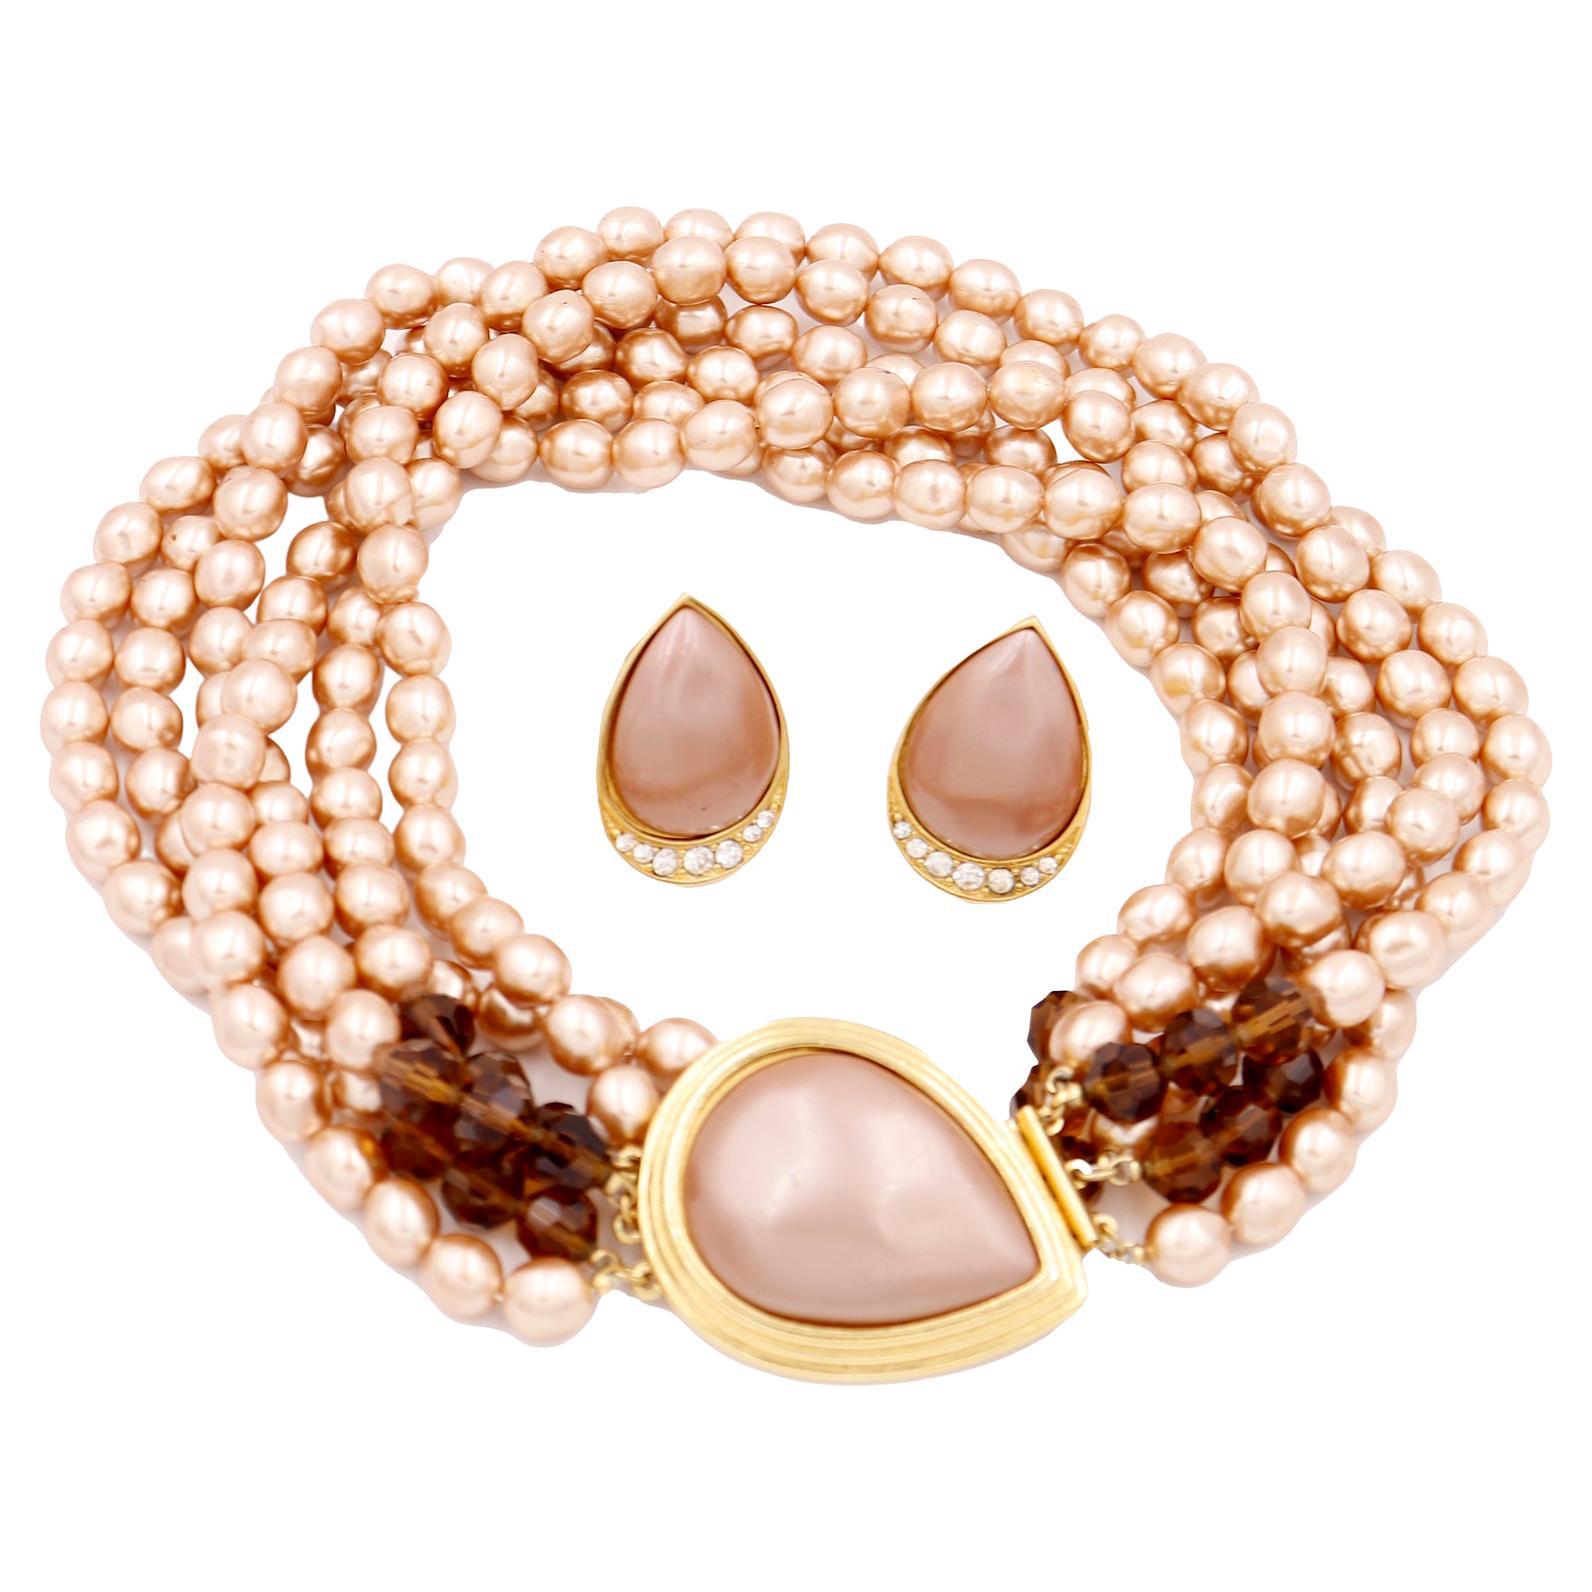 Yves Saint Laurent Collier de fausses perles roses à plusieurs rangs avec boucles d'oreilles percées